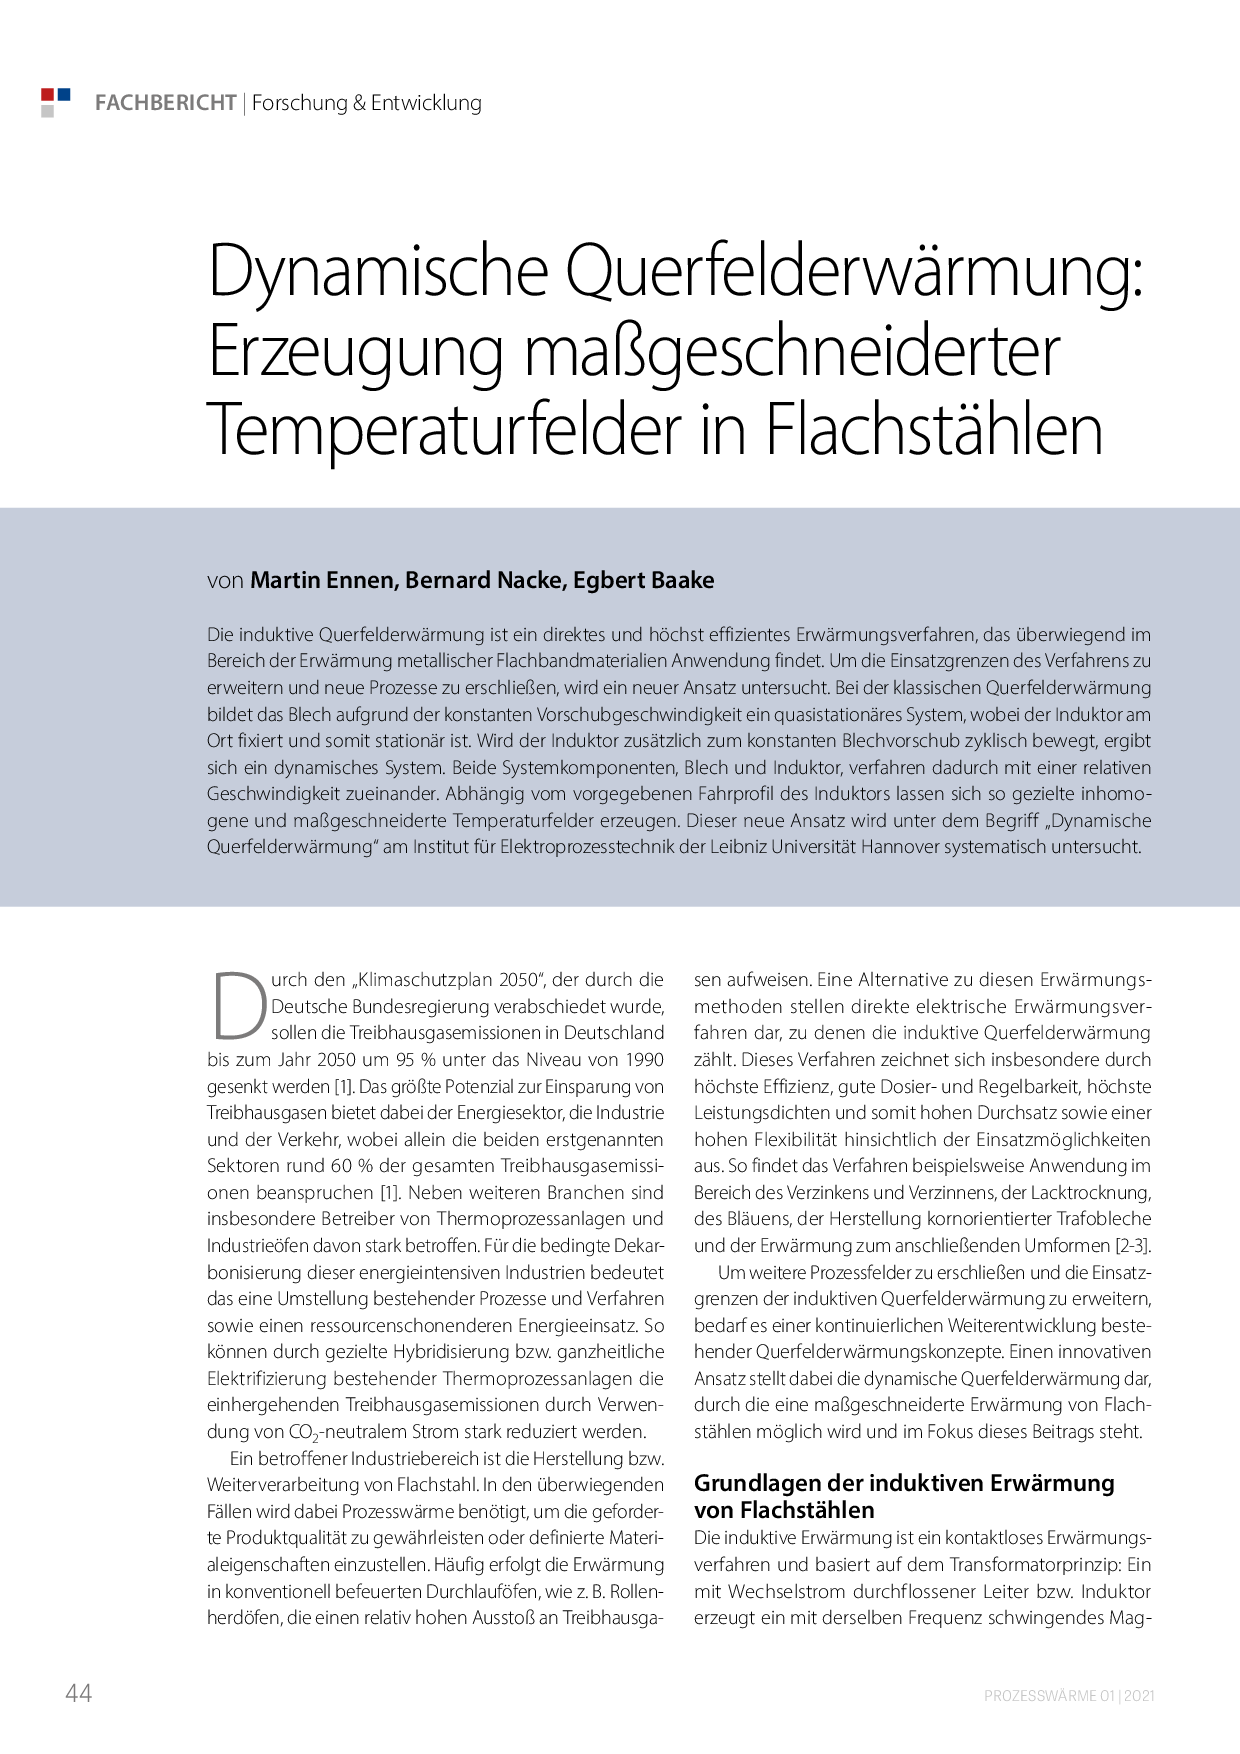 Dynamische Querfelderwärmung: Erzeugung maßgeschneiderter Temperaturfelder in Flachstählen